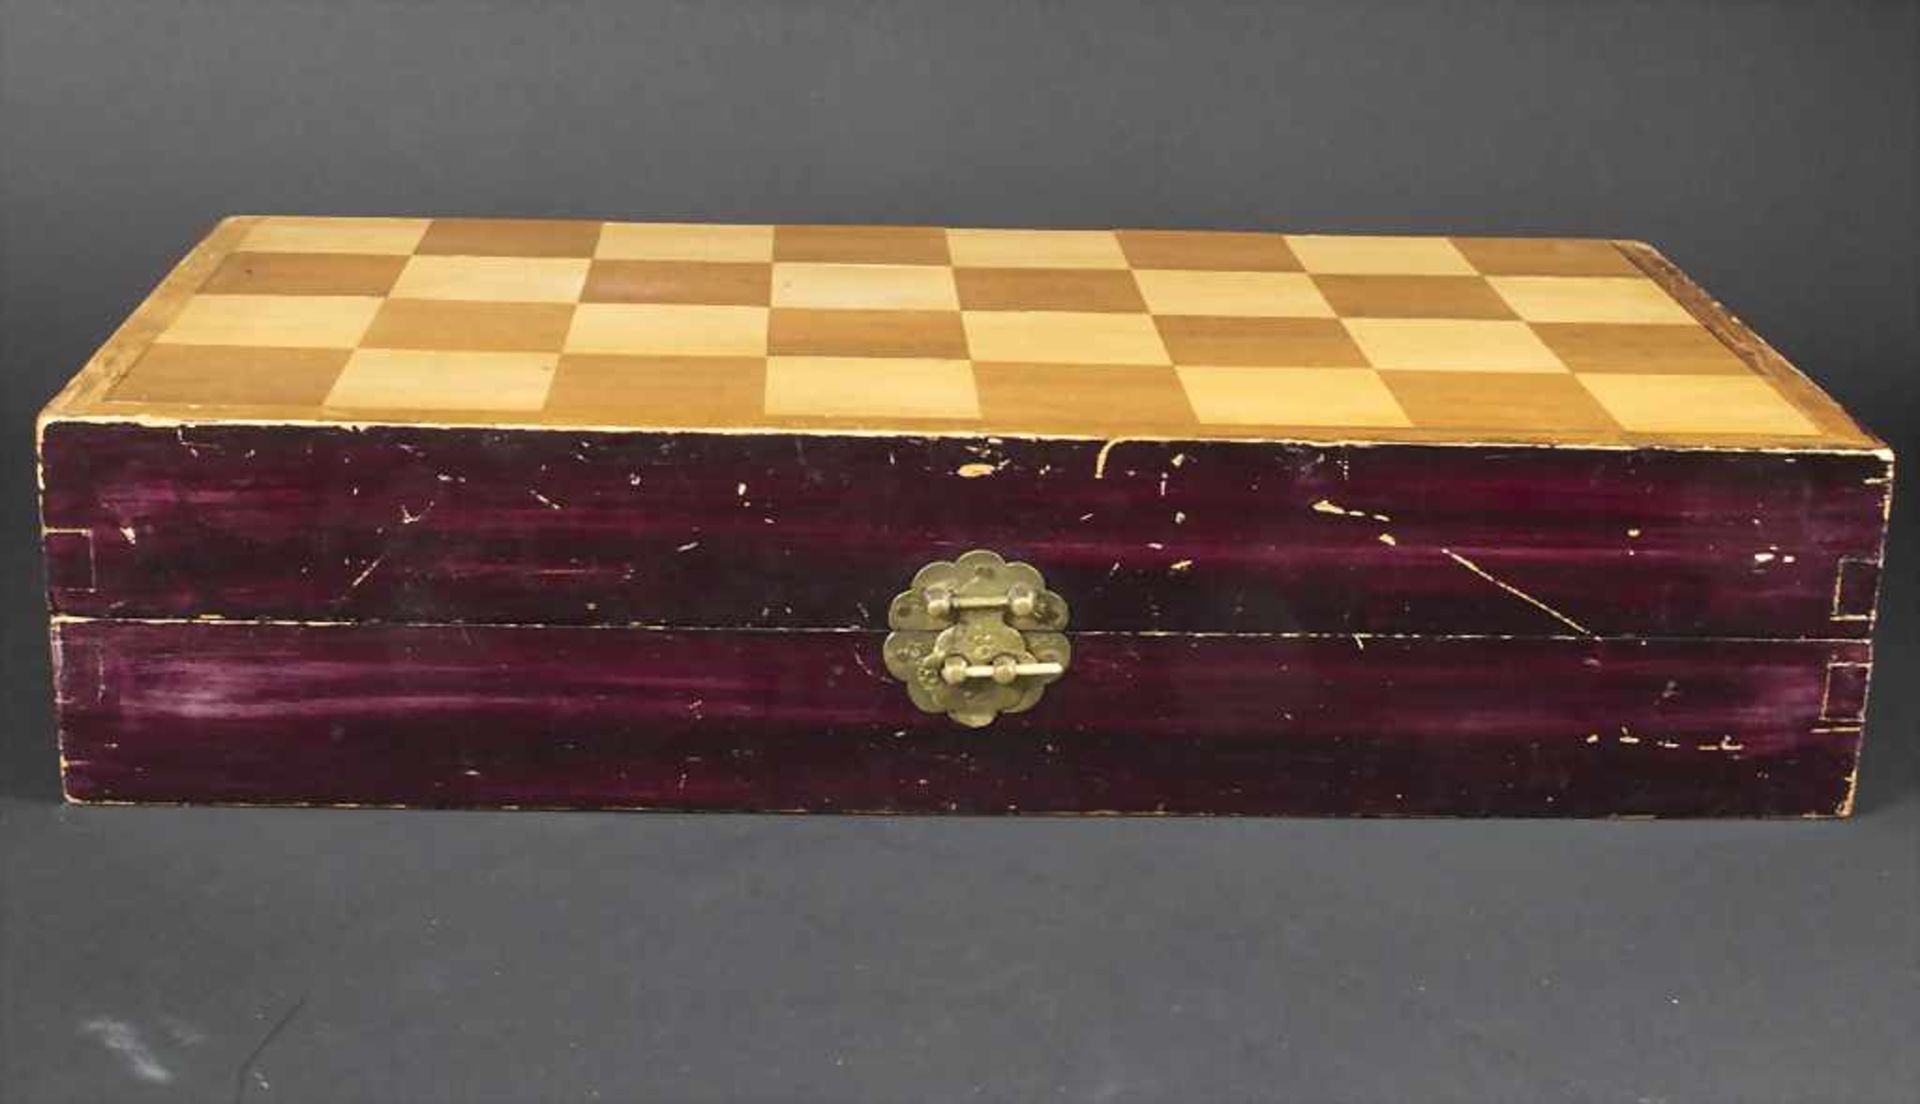 Elfenbein-Schachspiel / An ivory chess game, China, um 1920 - Image 25 of 33